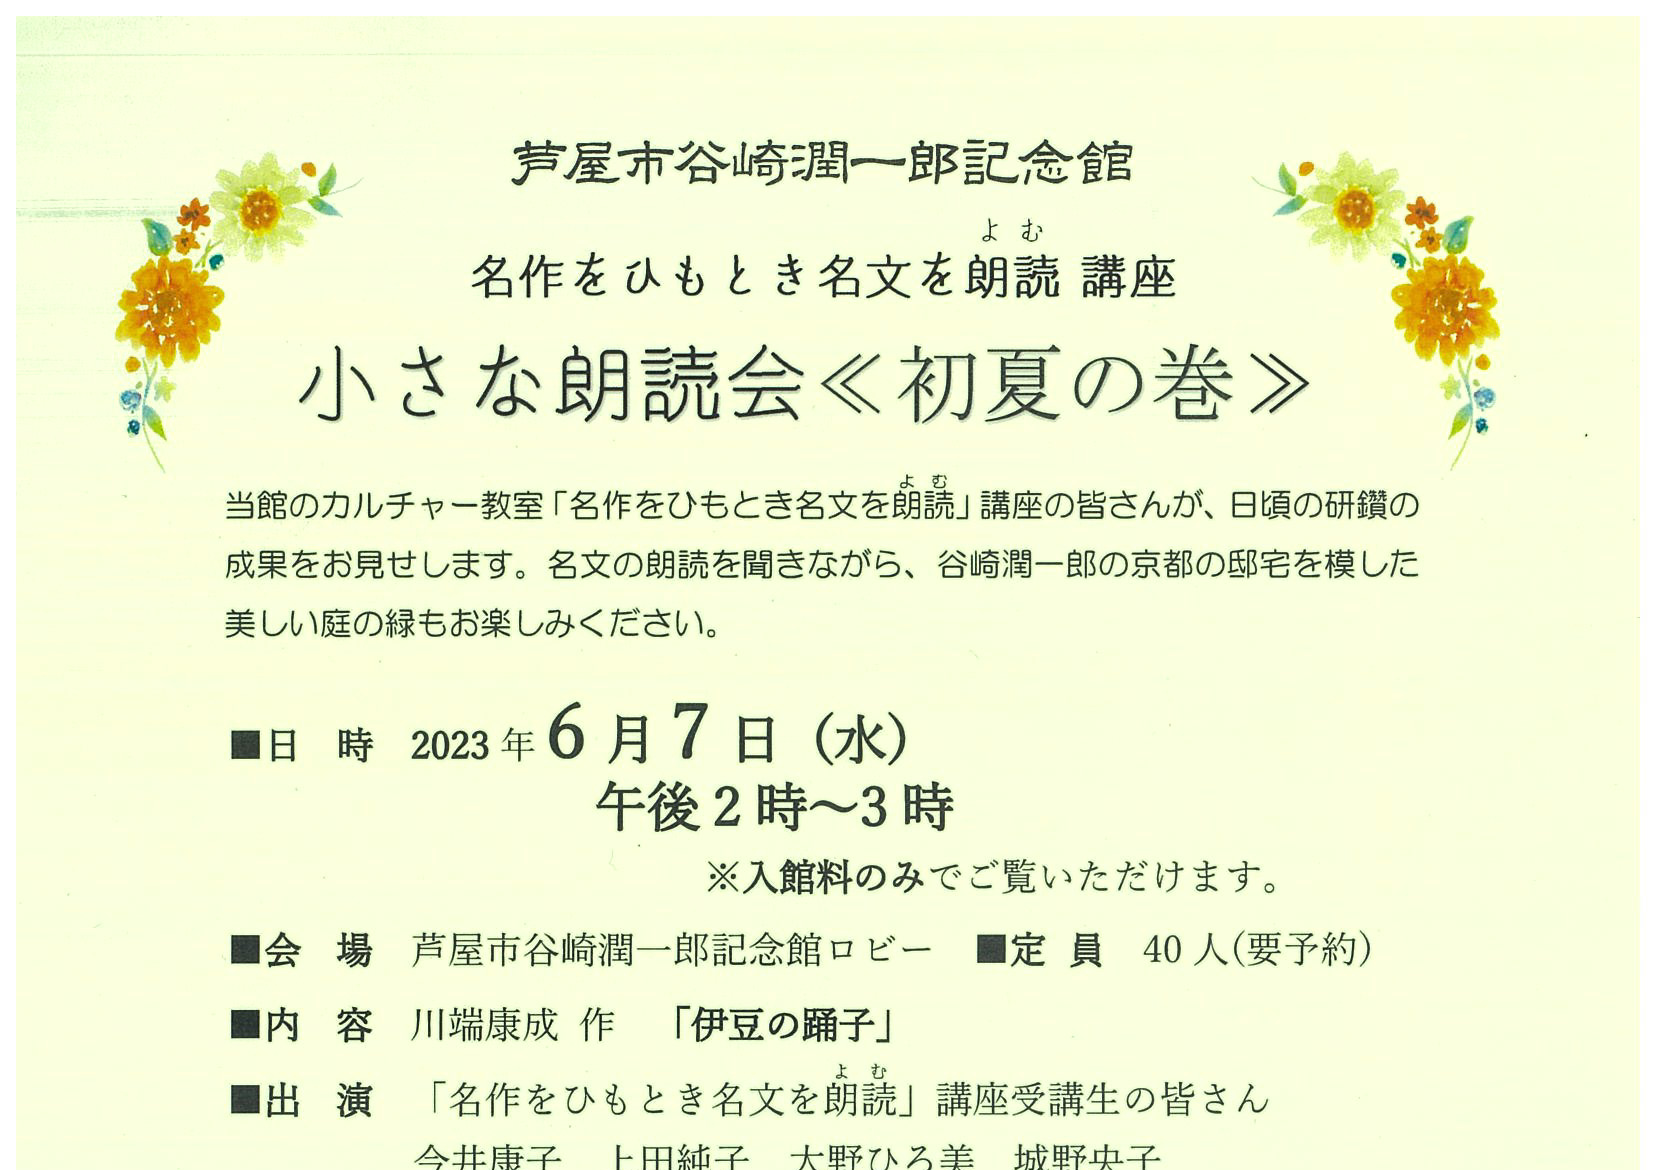 2023年6月7日 芦屋谷崎潤一郎記念館 <br>小さな朗読会《初夏の巻》